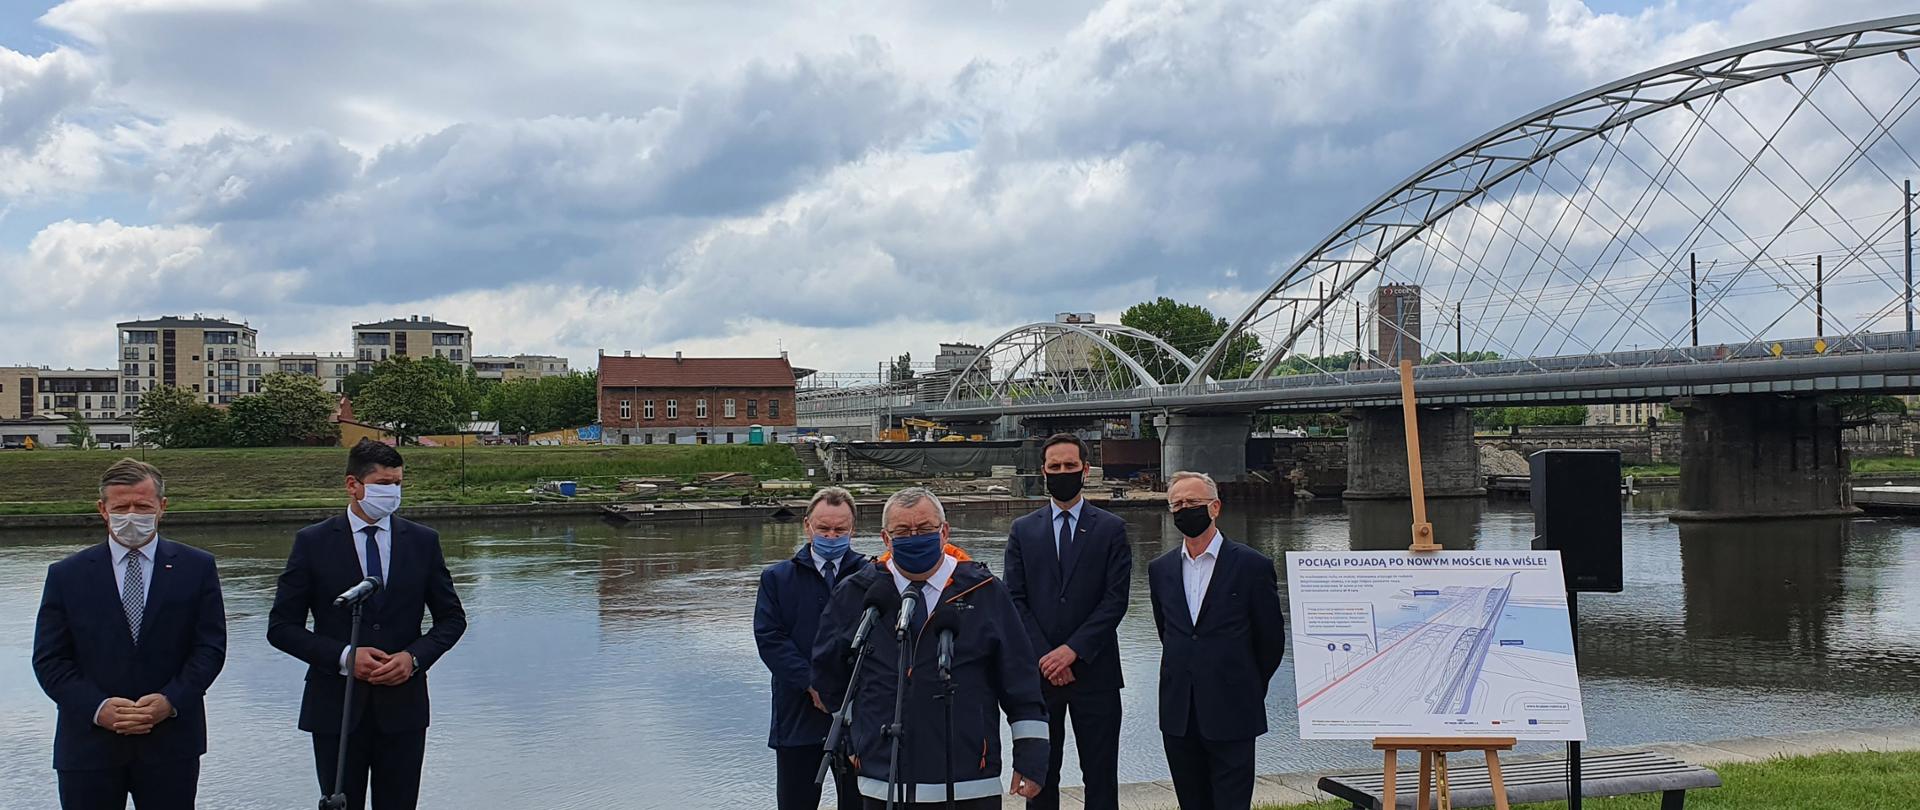 Na zdjęciu widać 6 mężczyzn, którzy stoją przy bulwarach nad rzeką w Krakowie. W tle widać nowy most kolejowy. Pogoda jest słoneczna, niebo błękitne.